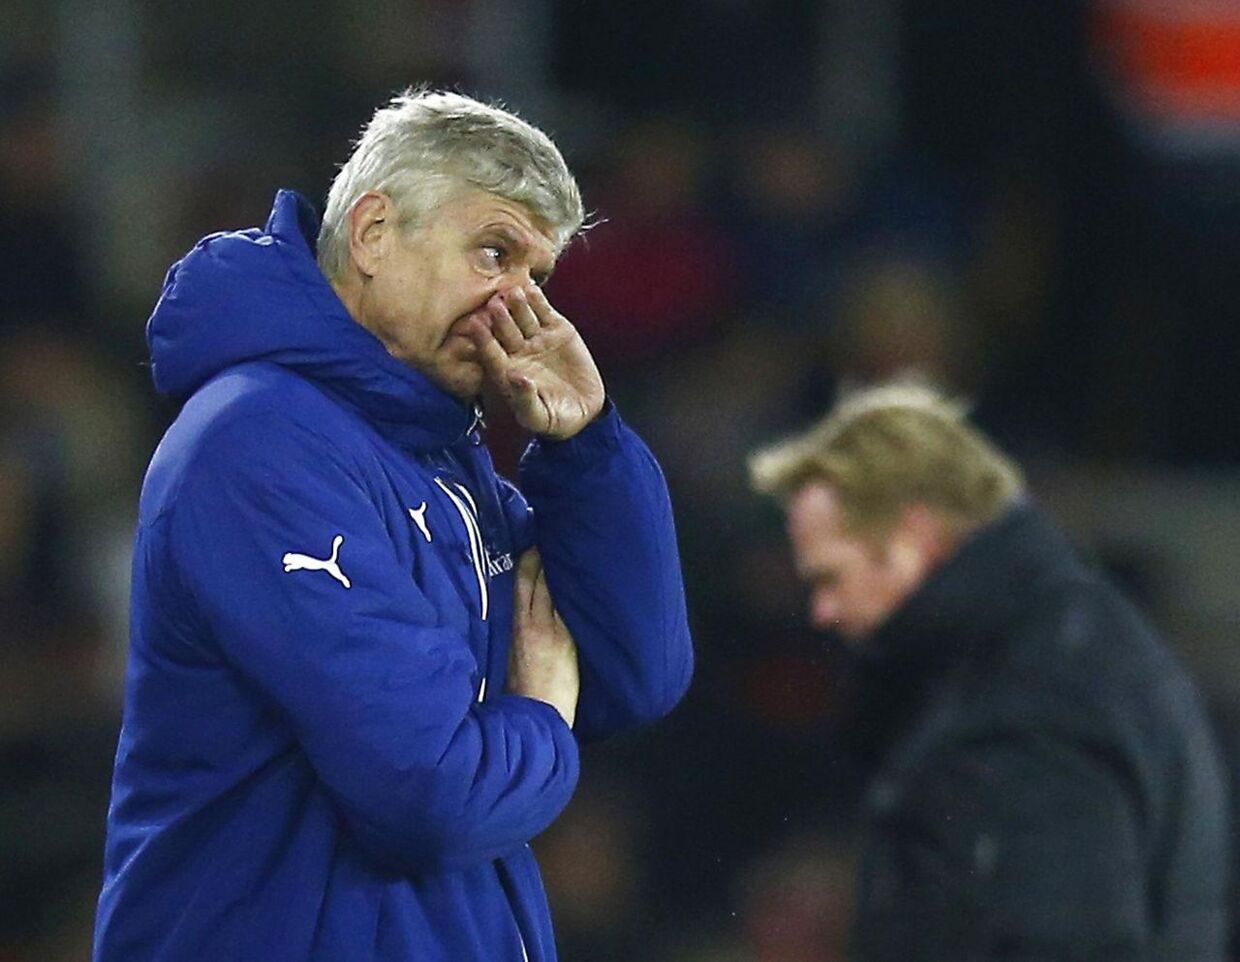 Arsenal manager Arsene Wenger kom torsdag i nærkontakt med en tilskuer under Arsenals 0-2 nederlag til Southampton.